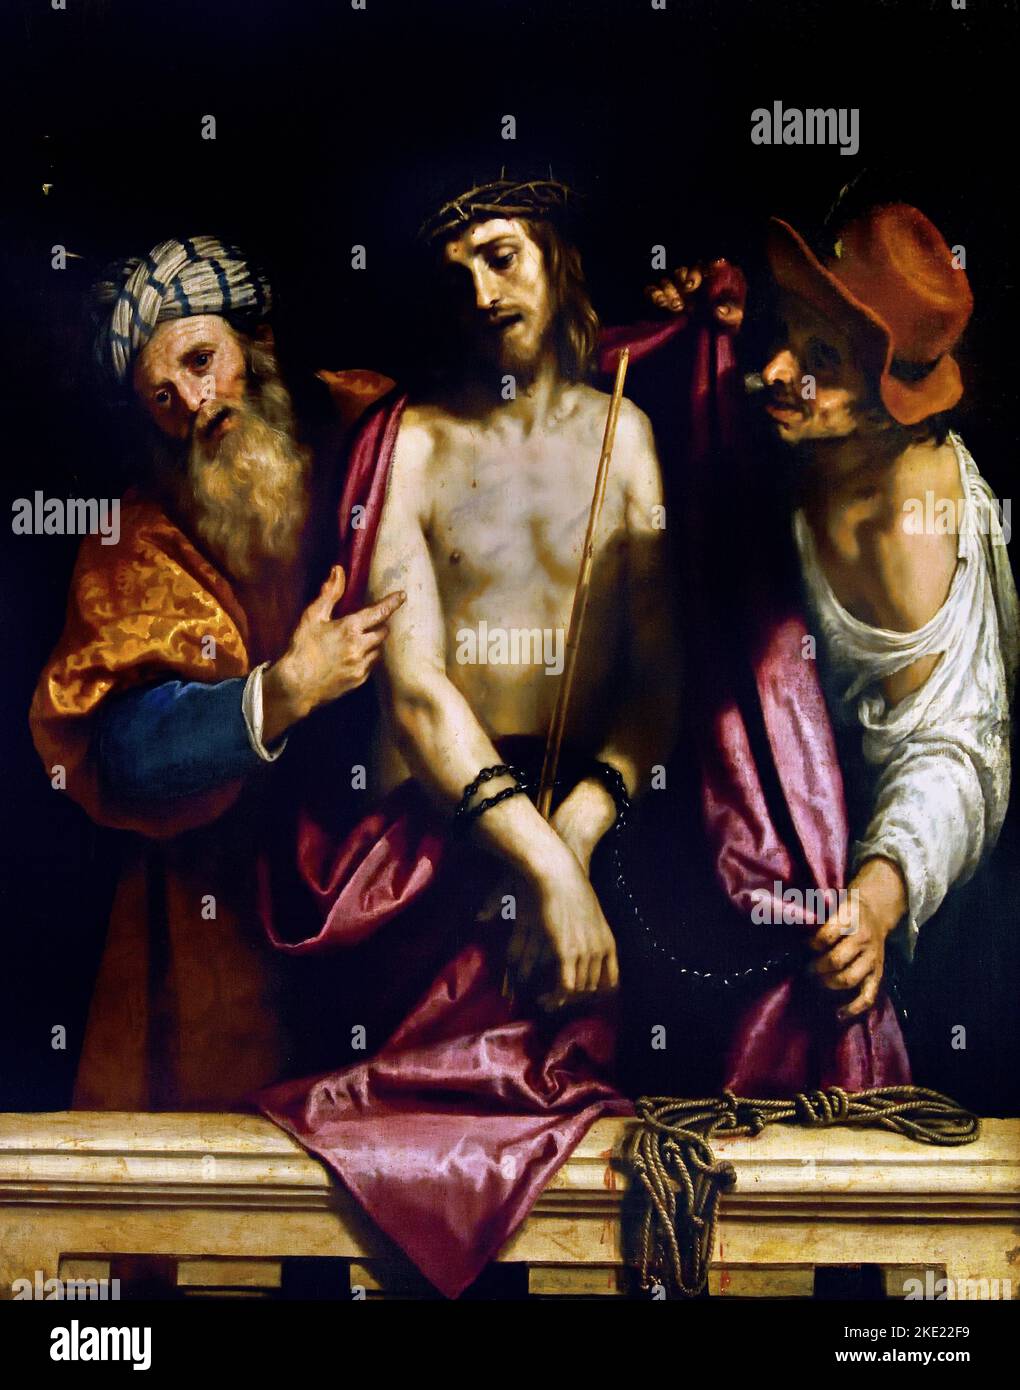 ECCE Homo de Lodovico Cardi 1559 - 1613 (connu sous le nom de Cigoli) était un peintre et architecte italien de la fin Mannerist et début de la période baroque Florence Italie Italien, Ecce Homo, (latin pour 'voici l'Homme), expression prononcée par, Ponce Pilate, au procès du Christ, Banque D'Images